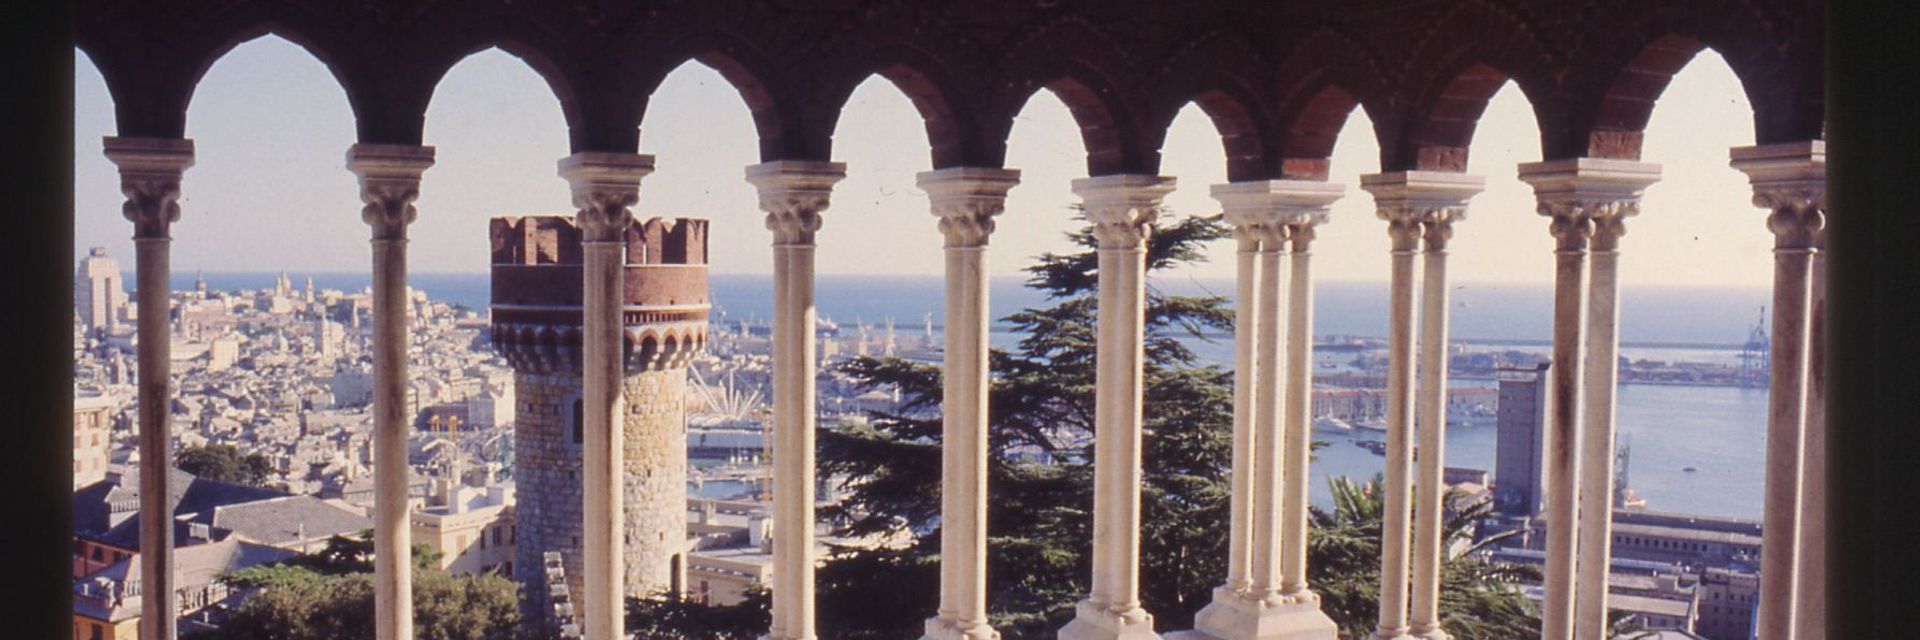 Castello D'Albertis